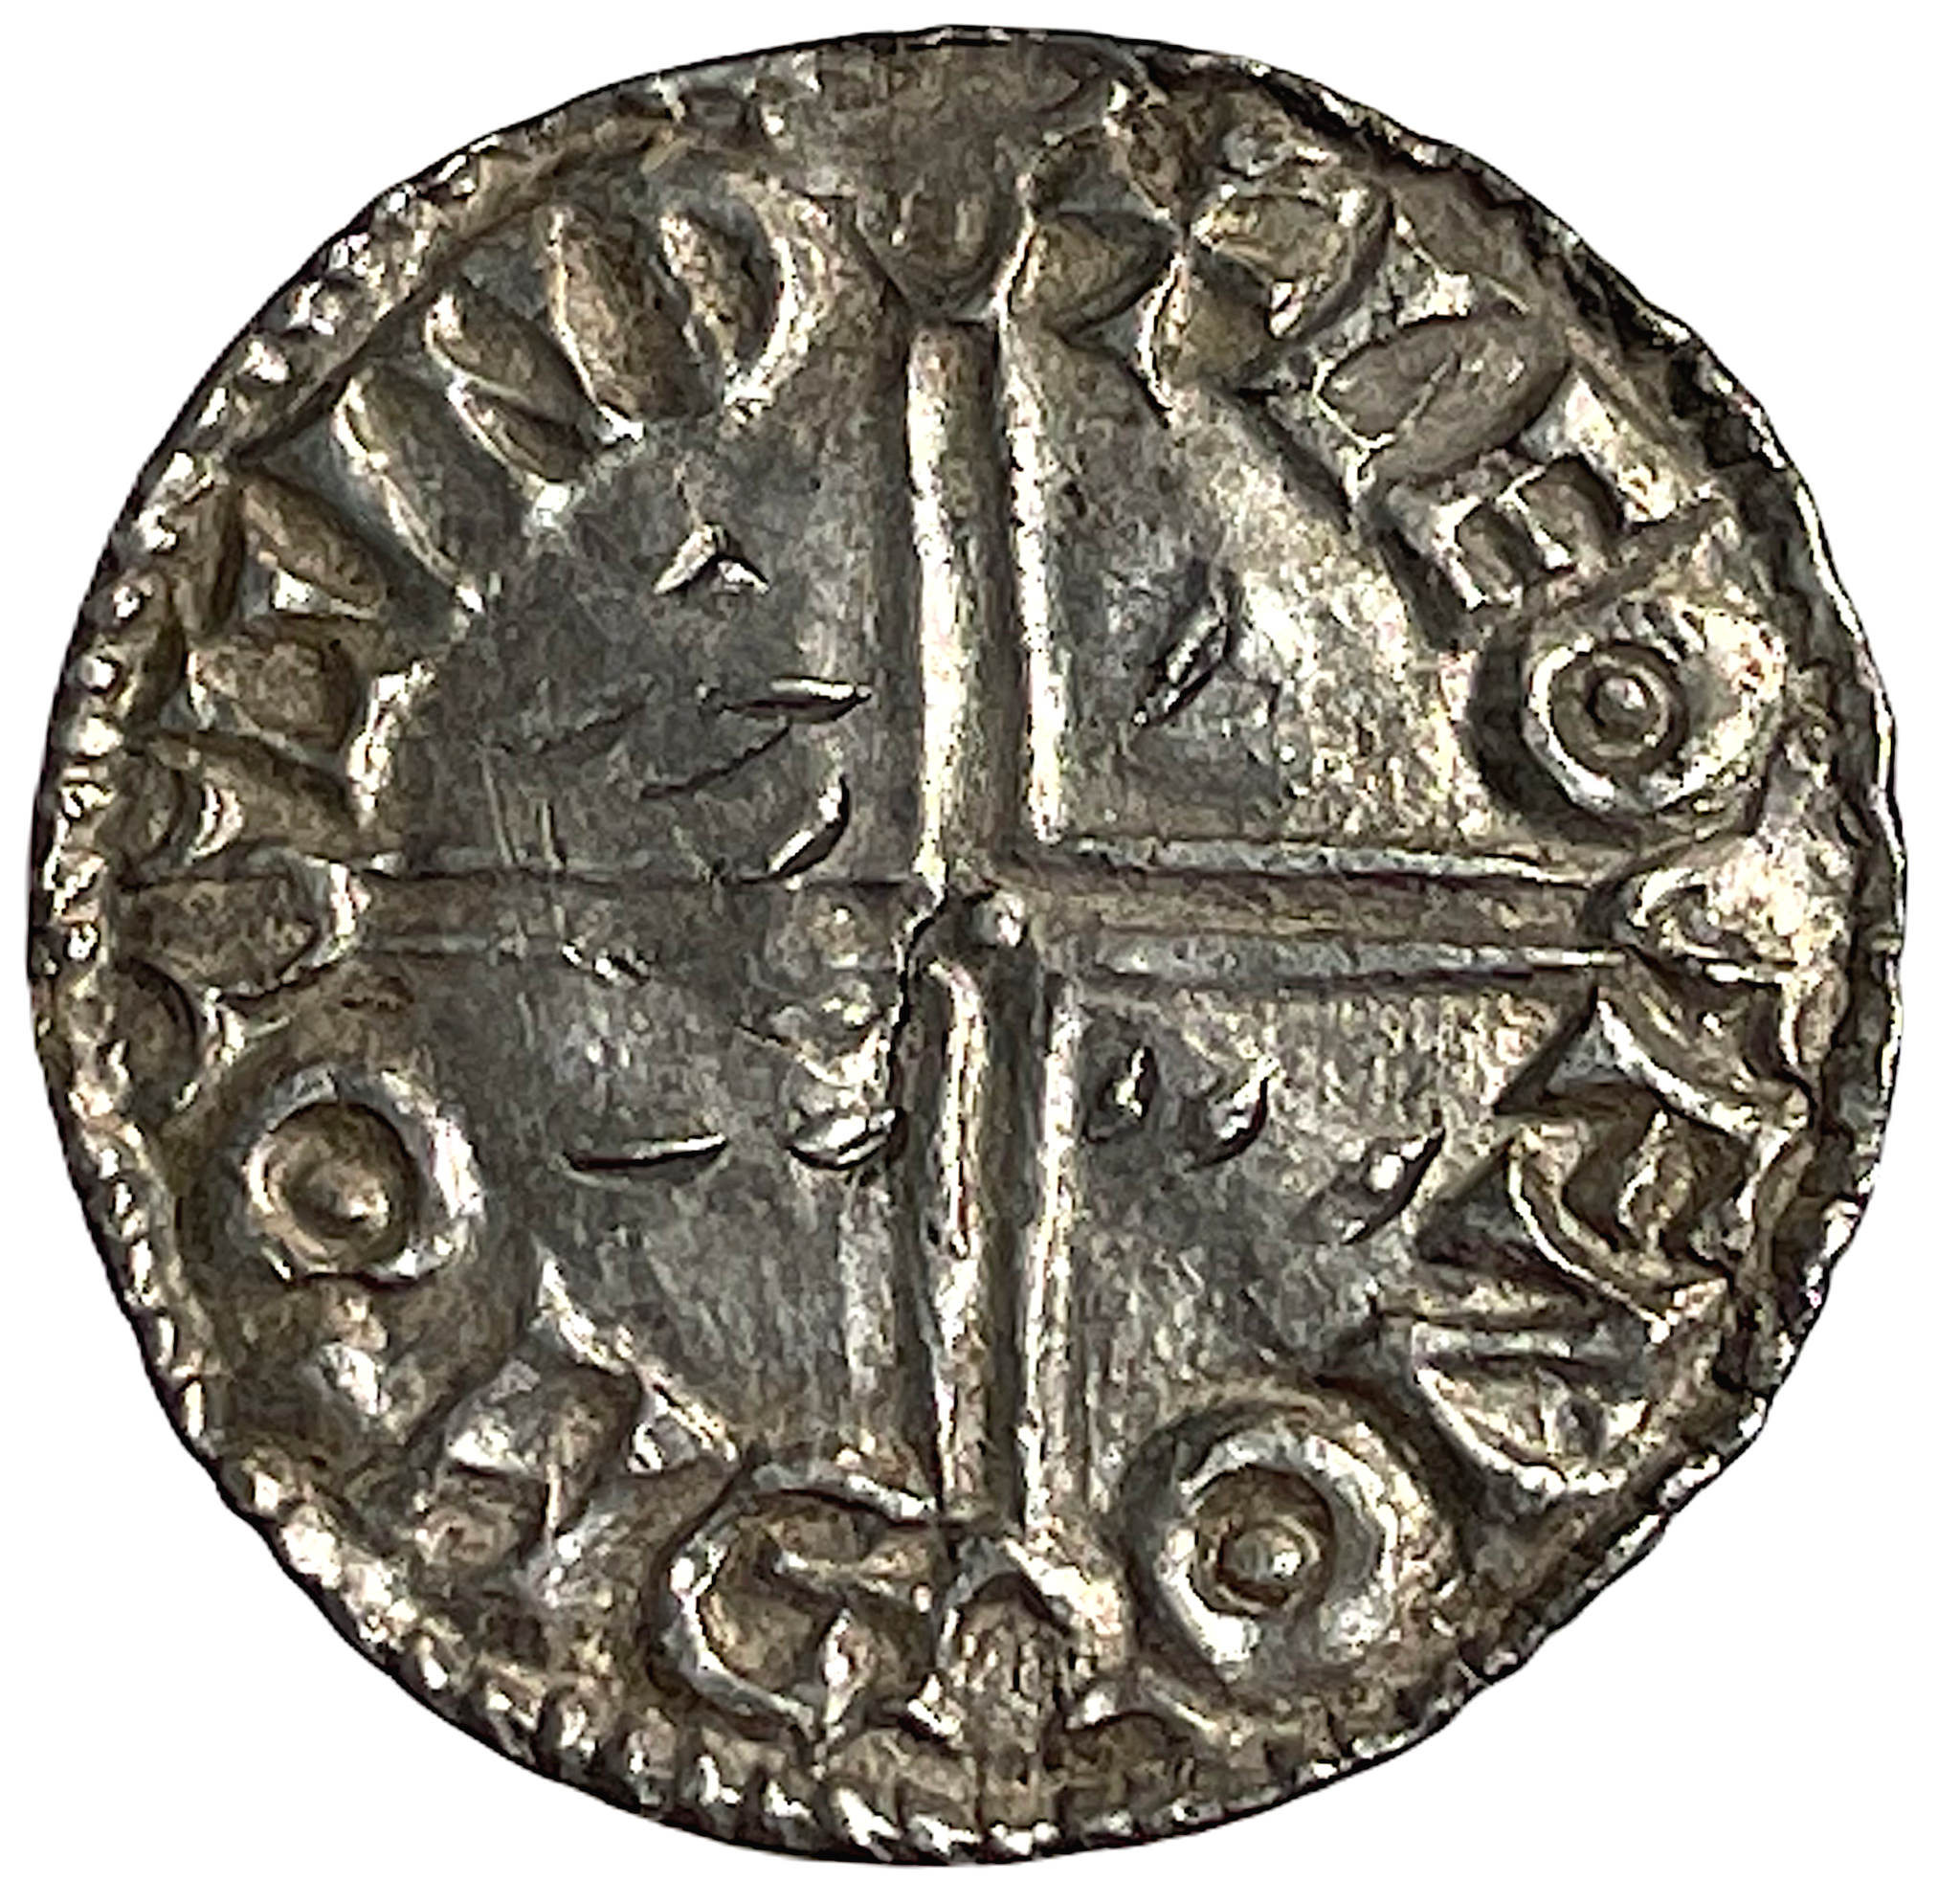 Æthelred II (978-1016). LONDON. Penny. Long cross. Mm LEOFNOD